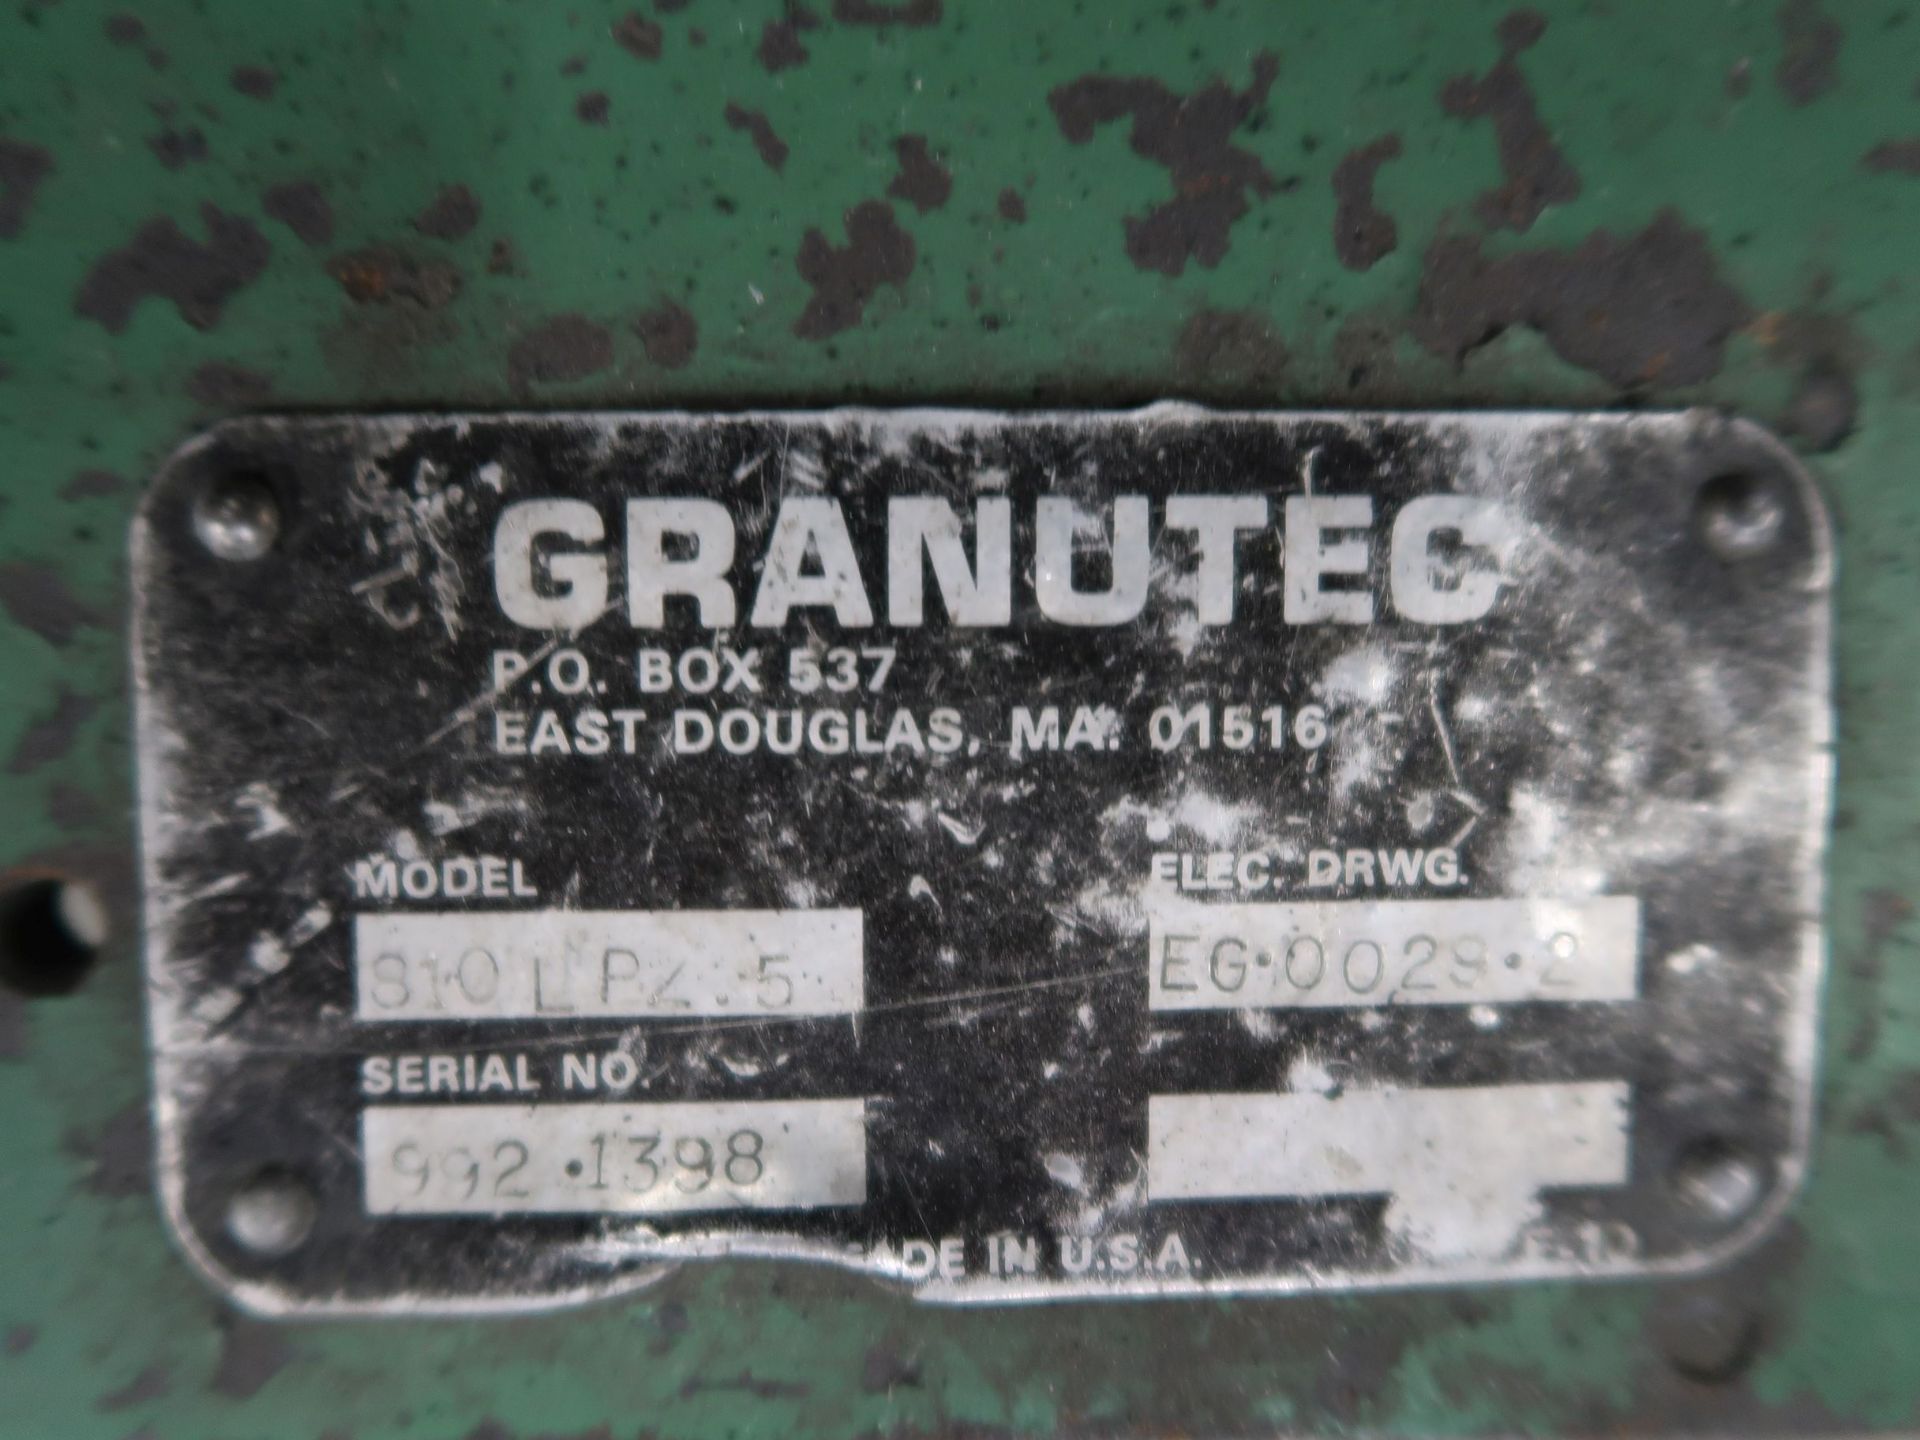 5 HP GRANUTEC MODEL 810LPZ-5 GRANULATOR; S/N 992-1398 - Image 5 of 5